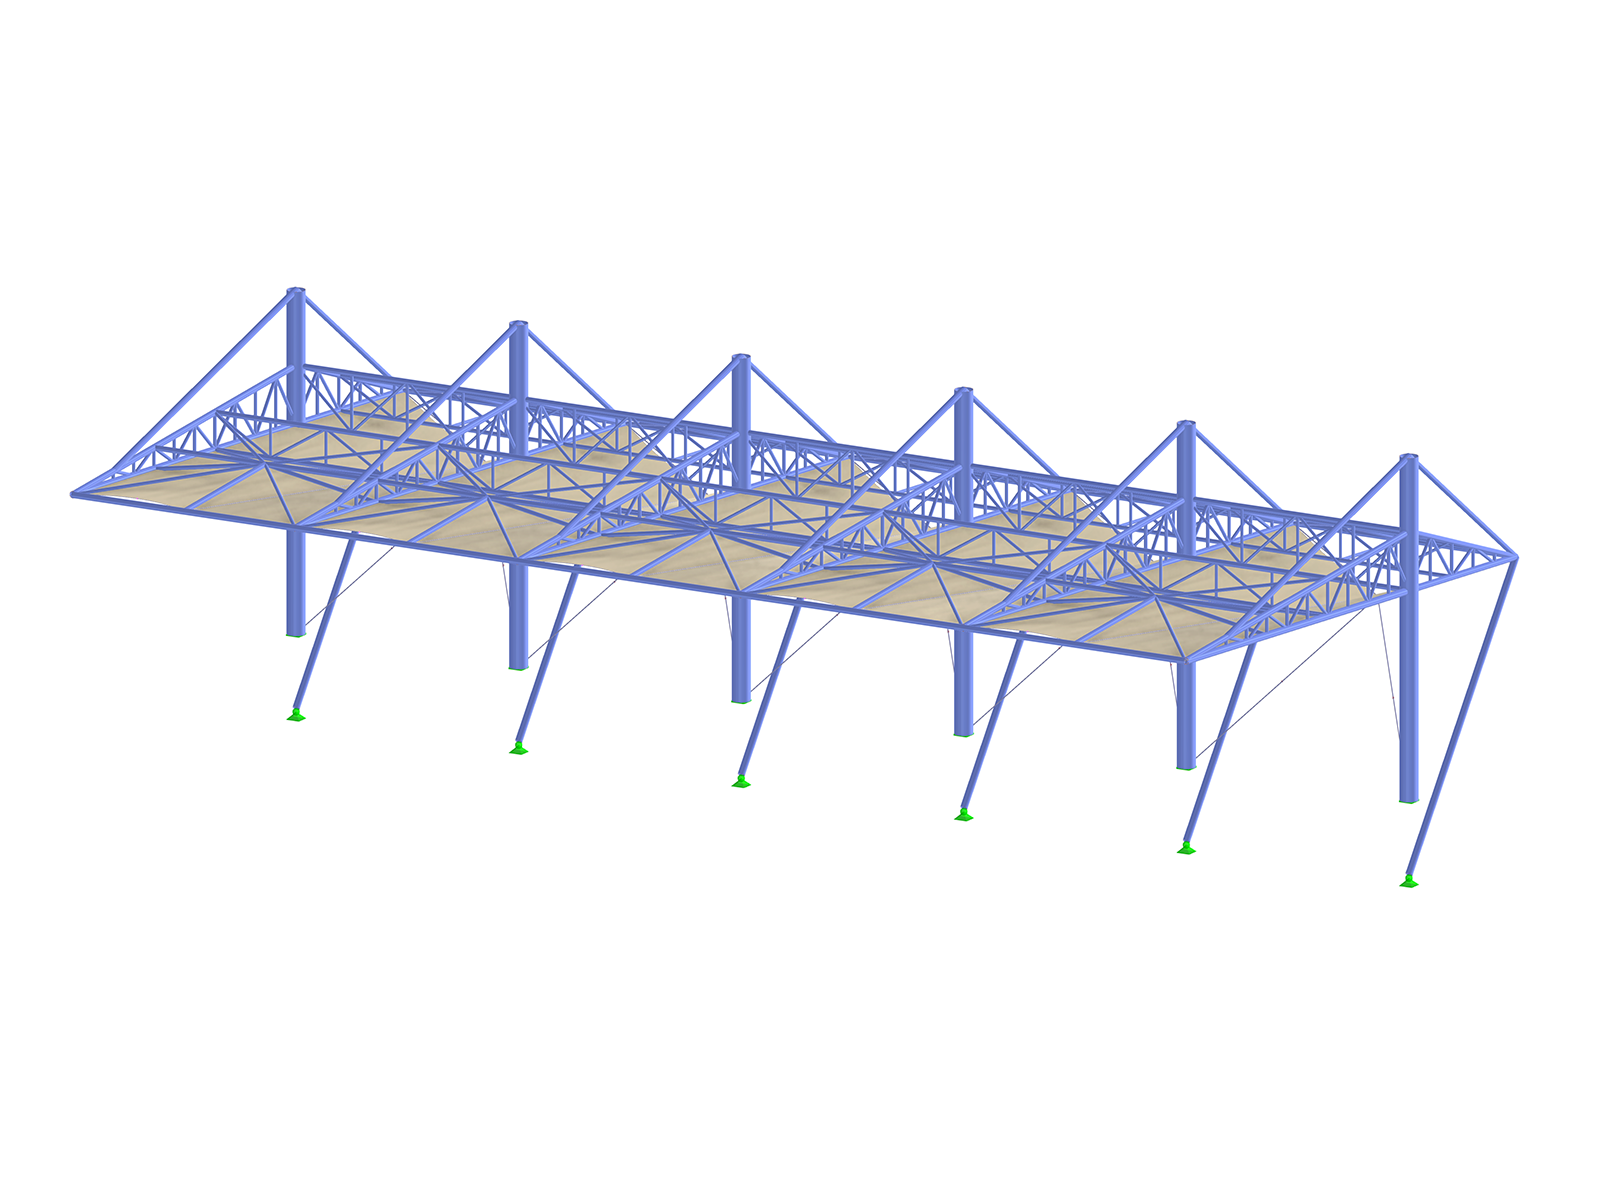 Modelo 3D de uma estrutura de cobertura de membrana suportada por vigas em aço. Esta cobertura destina-se a uma tribuna ou a uma zona de espectadores, proporcionando proteção e sombra. A estrutura é composta por treliças e vigas de aço azuis, originando uma série de formas triangulares e retangulares.